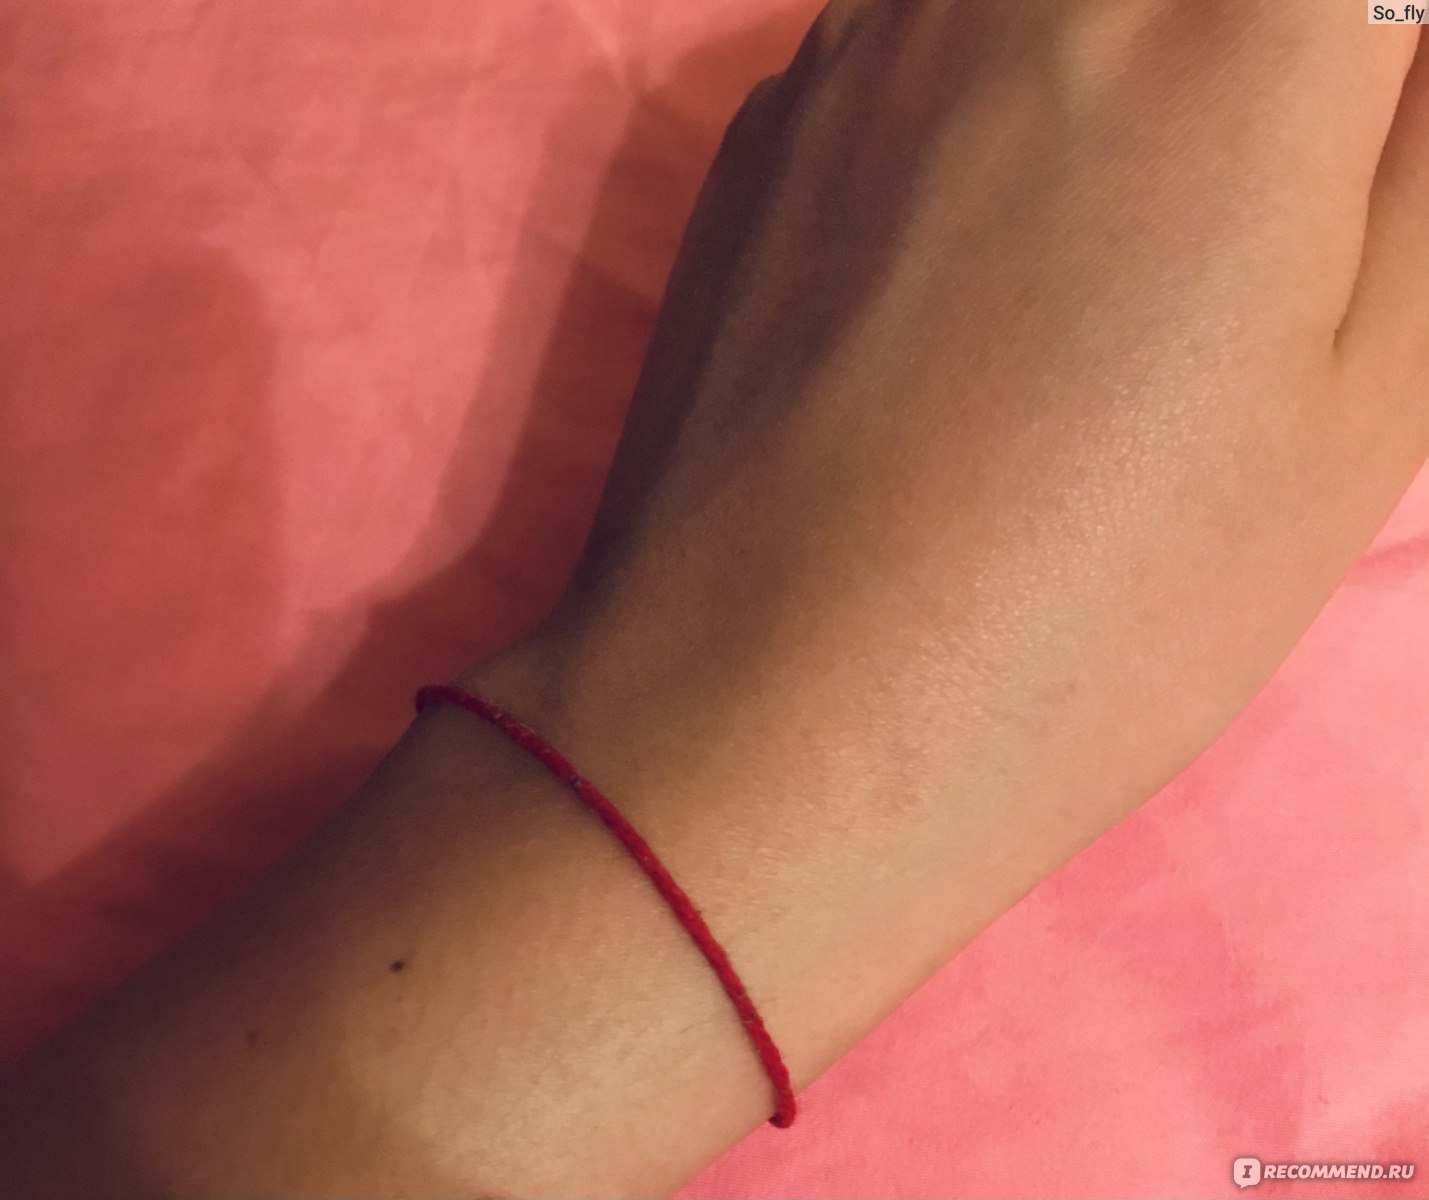 Браслет Red niti Красная нить из Израиля - «Зачем носить нить? Выполняет лиона функцию защиты? Как обрести покой на душе и пара интересных фактов онити внутри!»